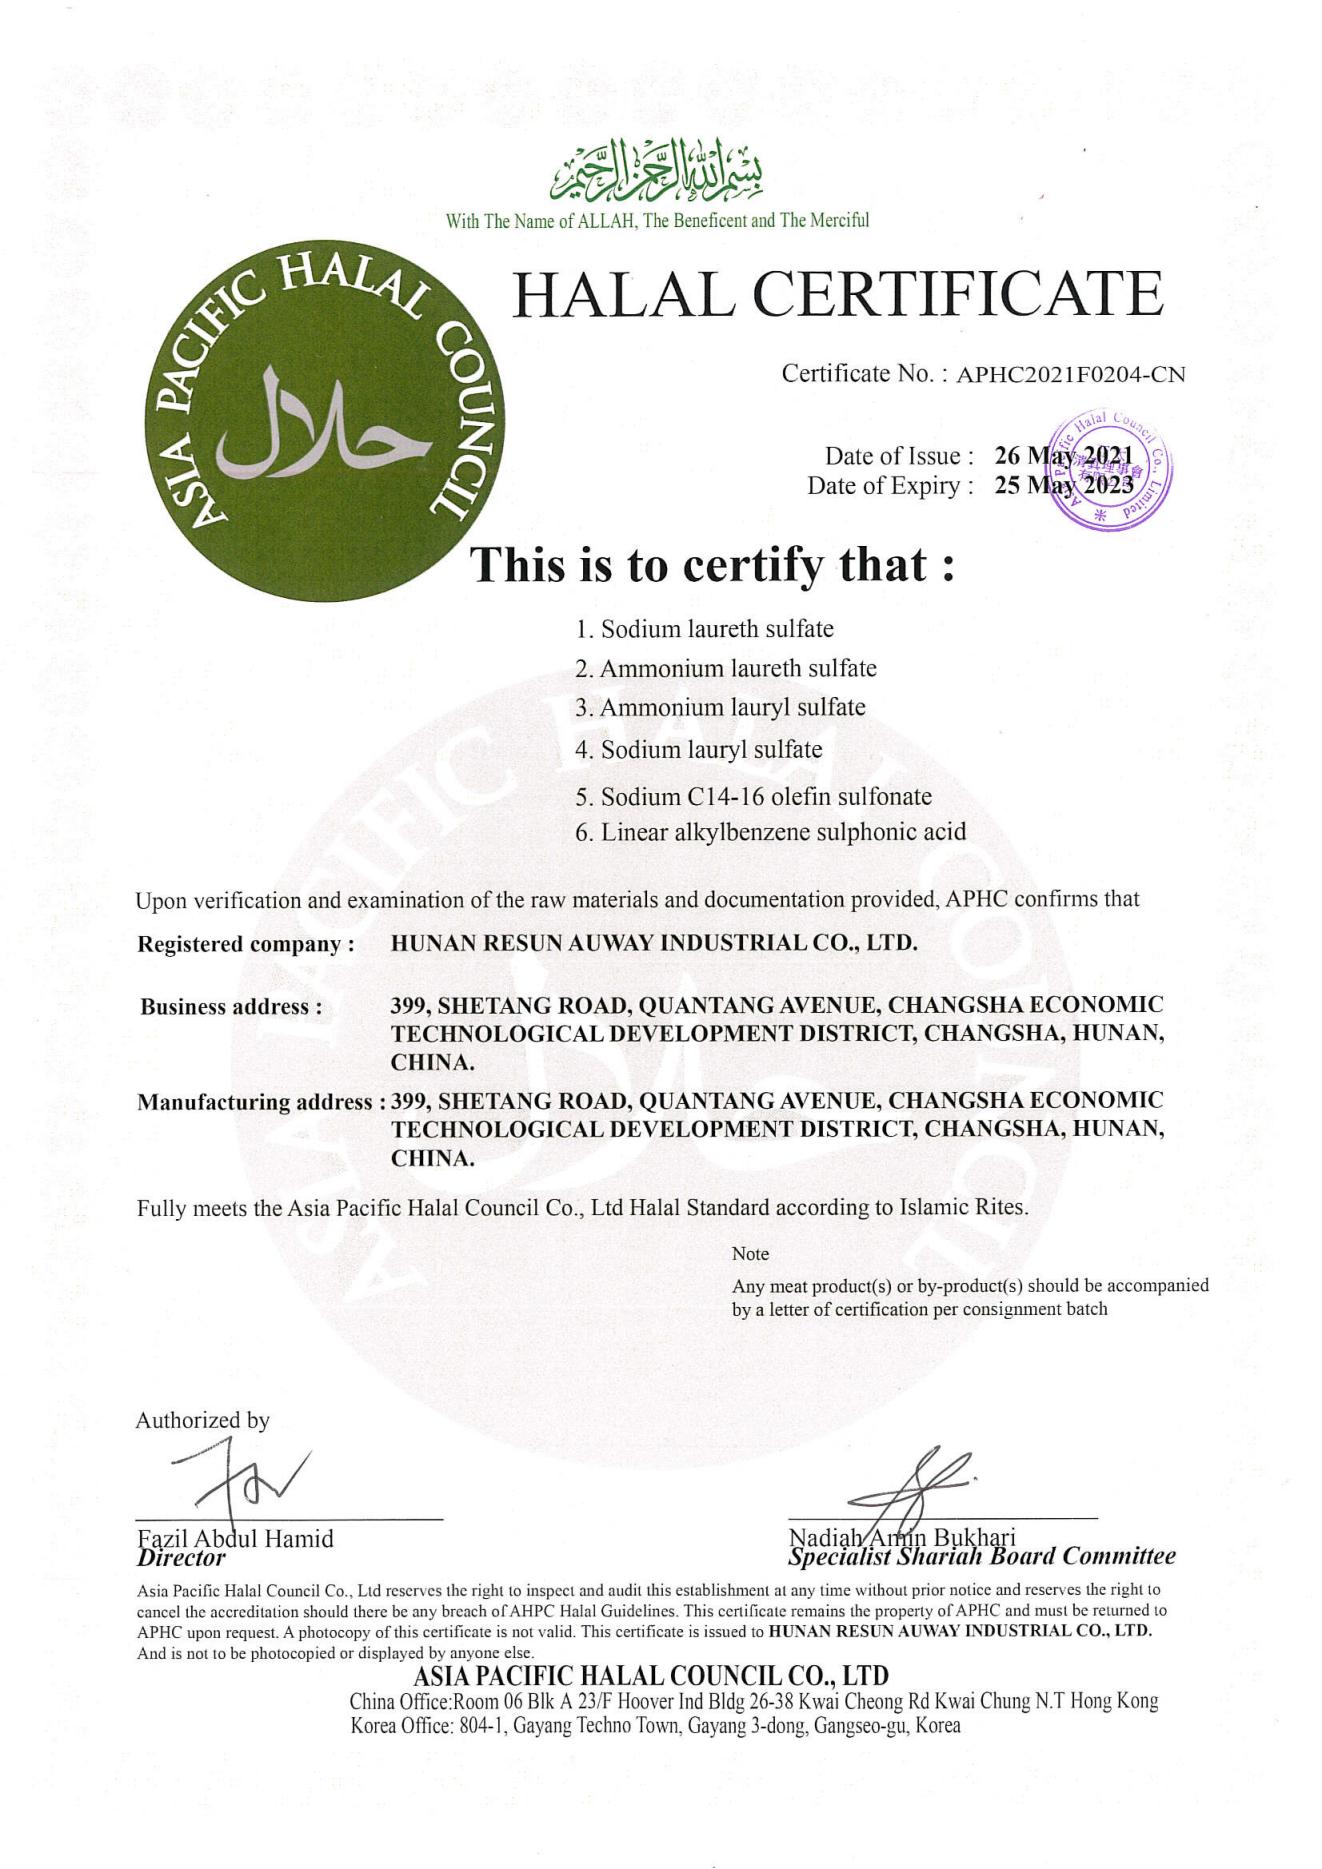 丽臣奥威2021年HALAL认证证书